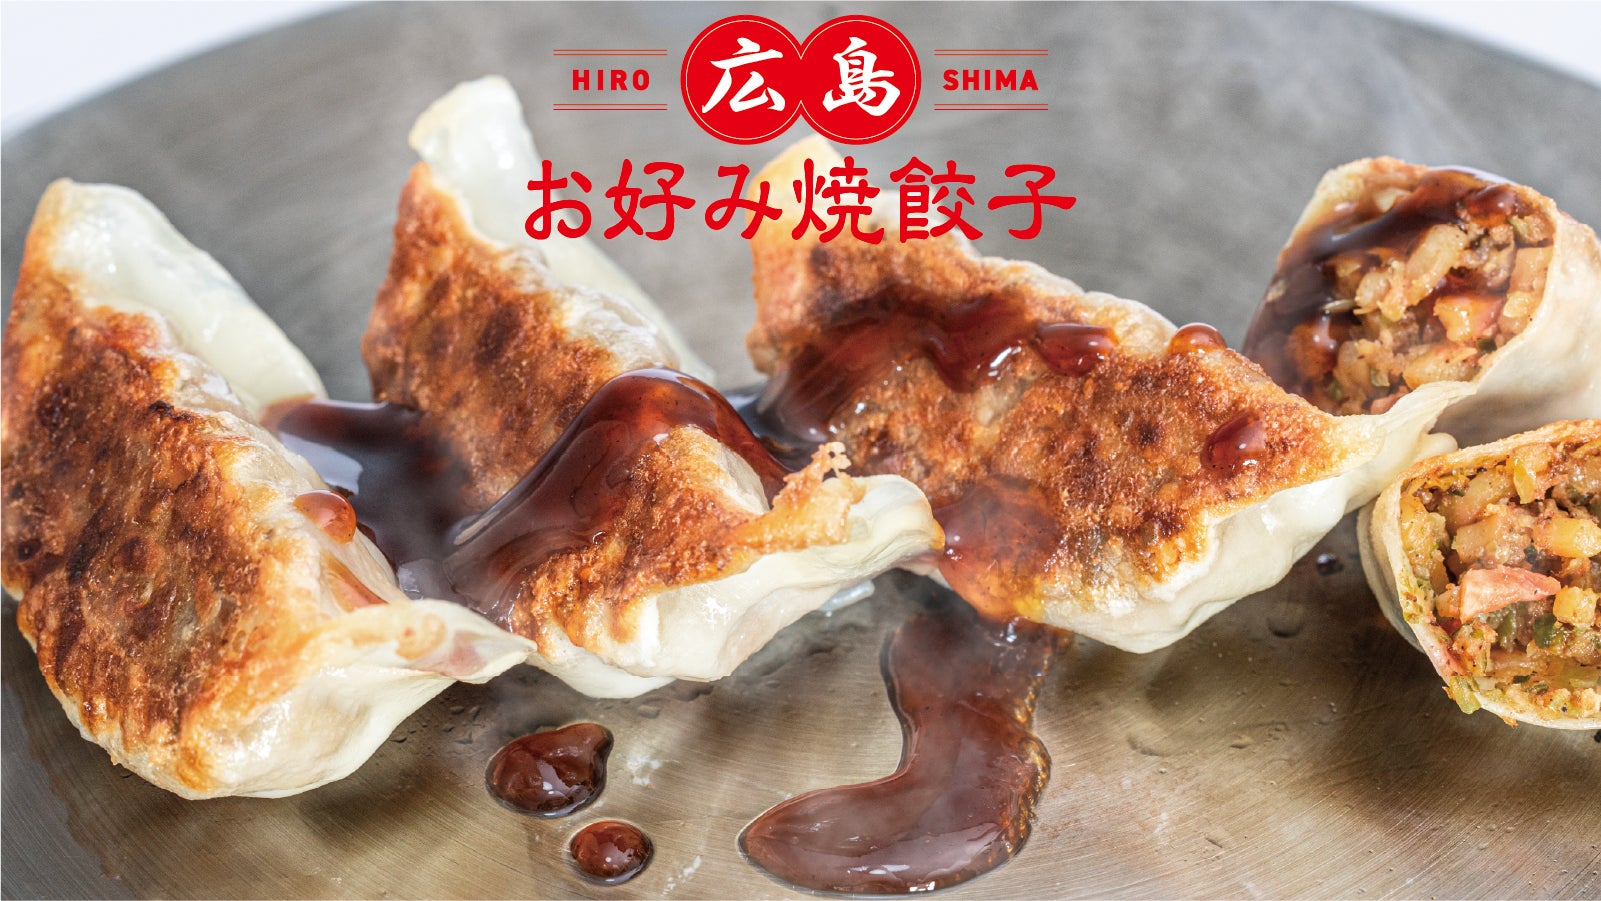 【新商品】広島県民のソウルフードが一口餃子でおつまみに！やみつき必至の『広島お好み焼餃子』をMakuakeにてスタート